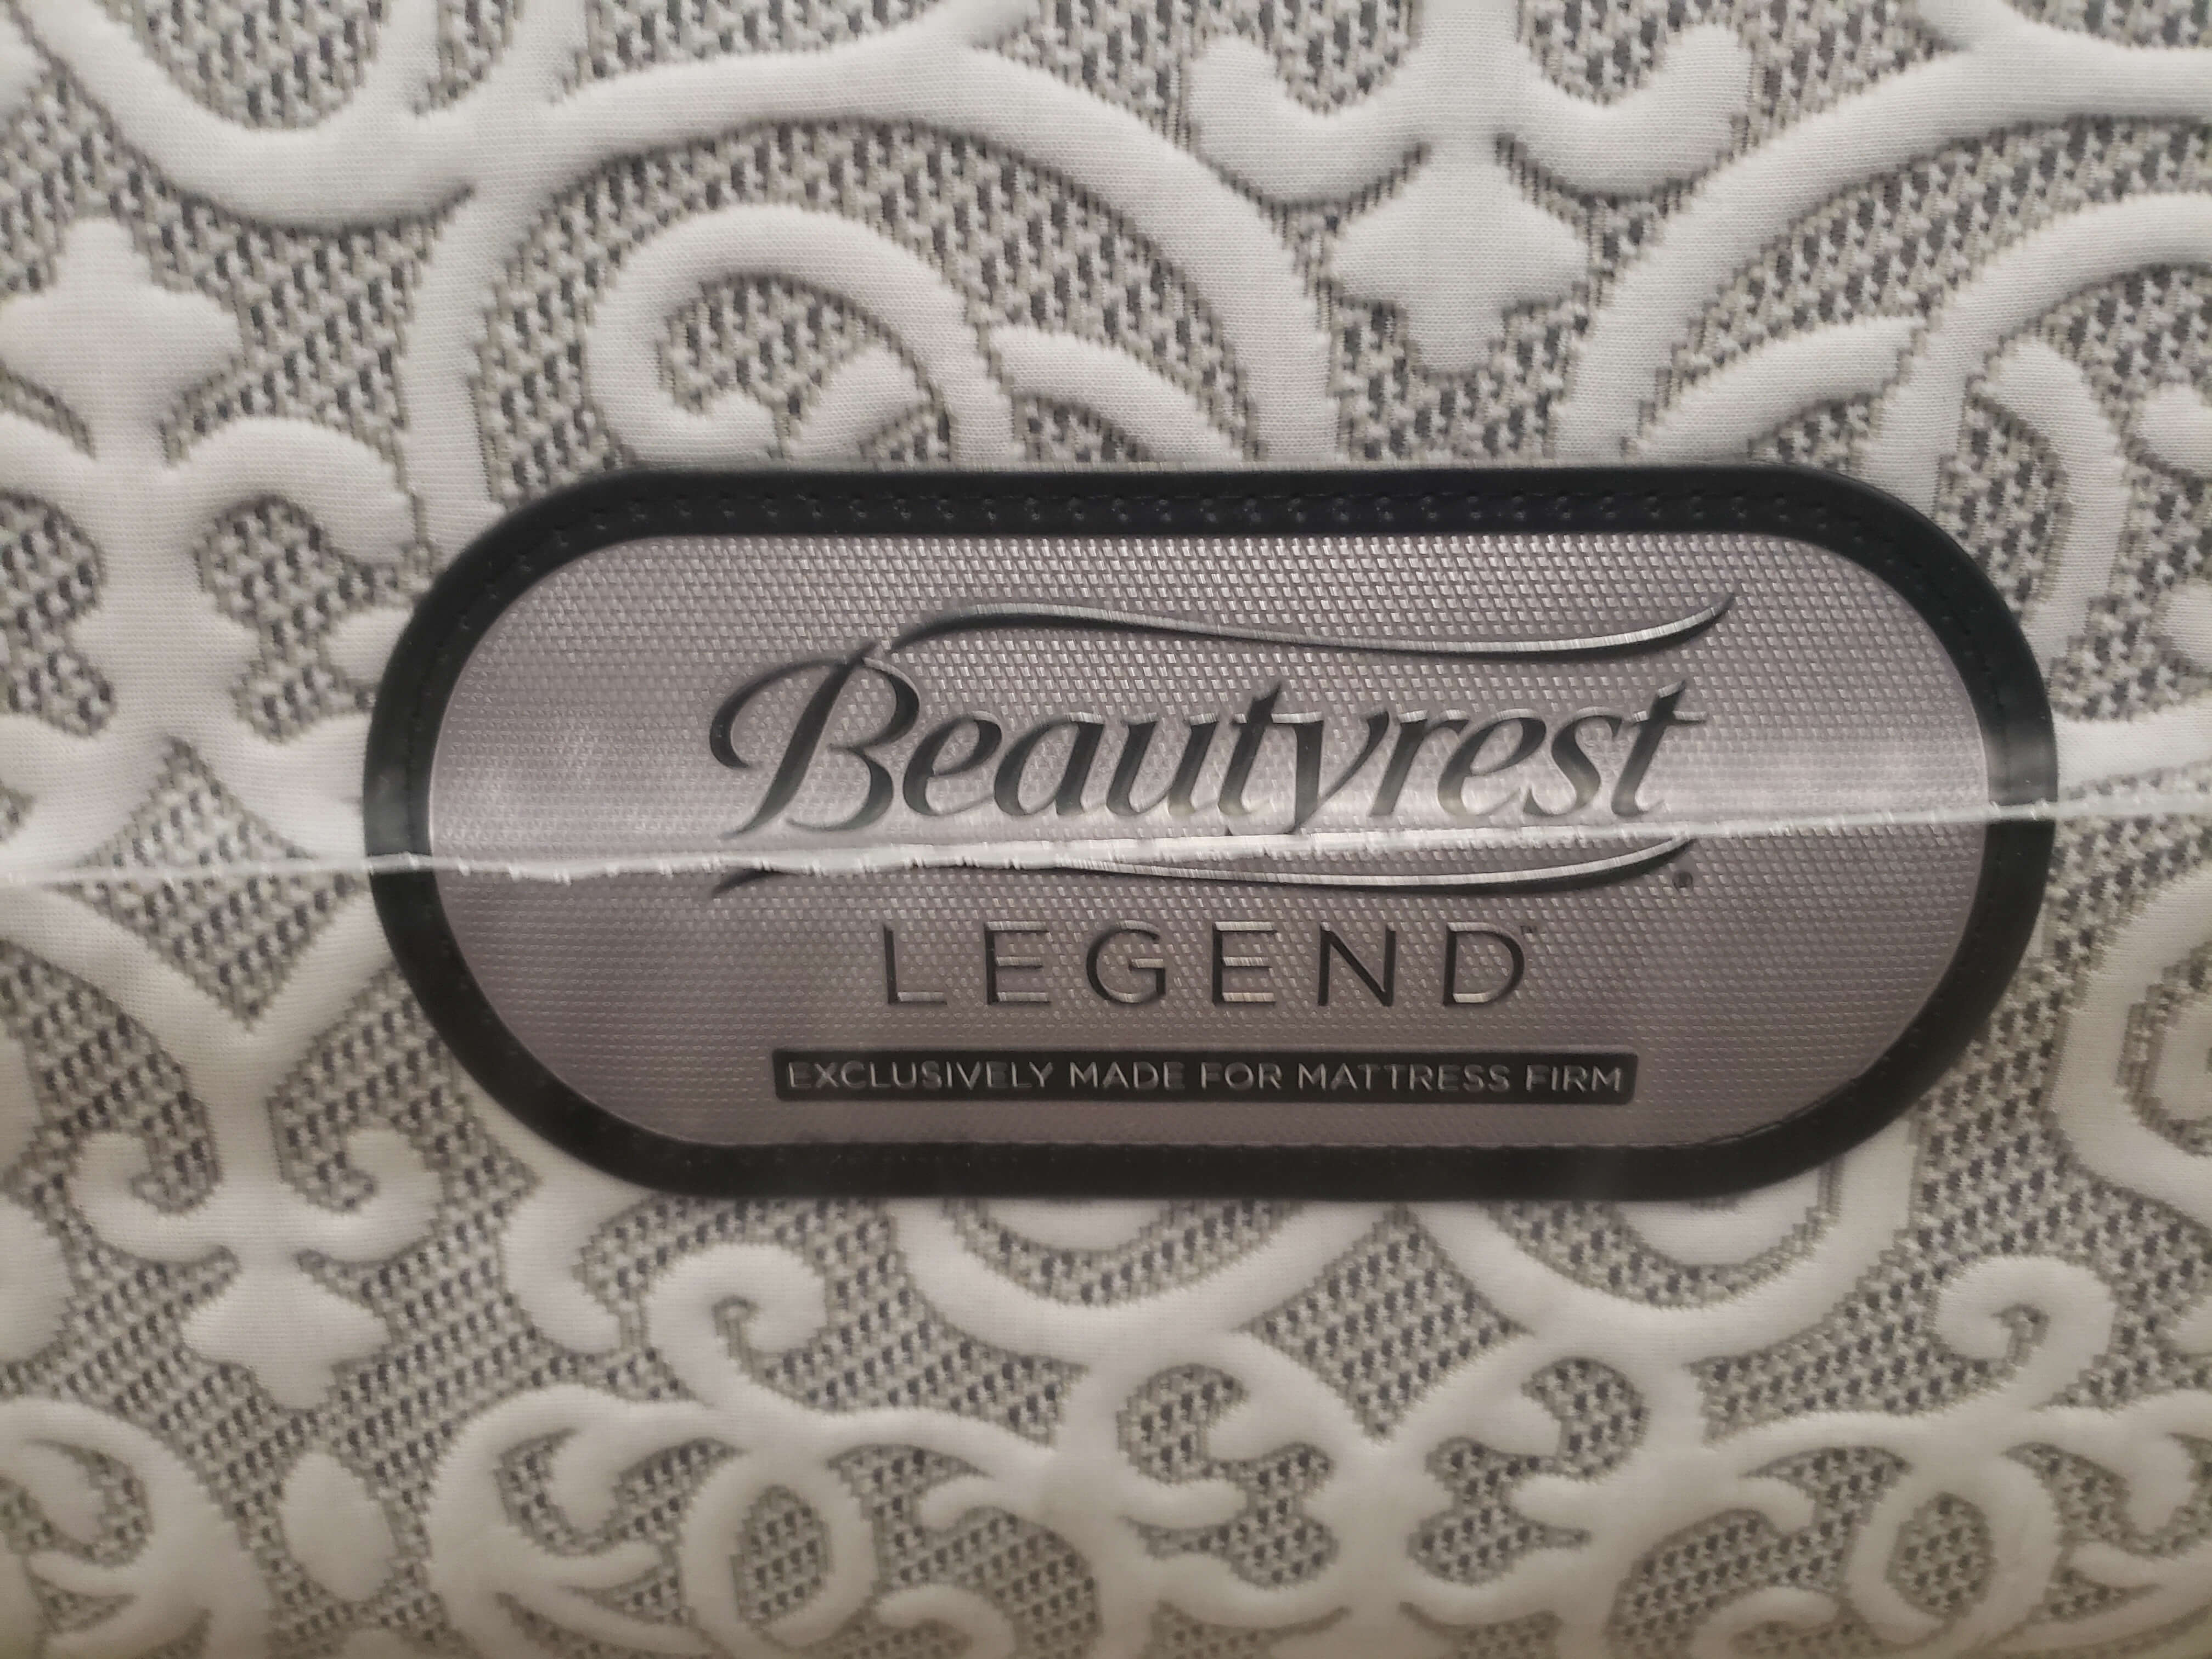 beautyrest legend extra firm mattress